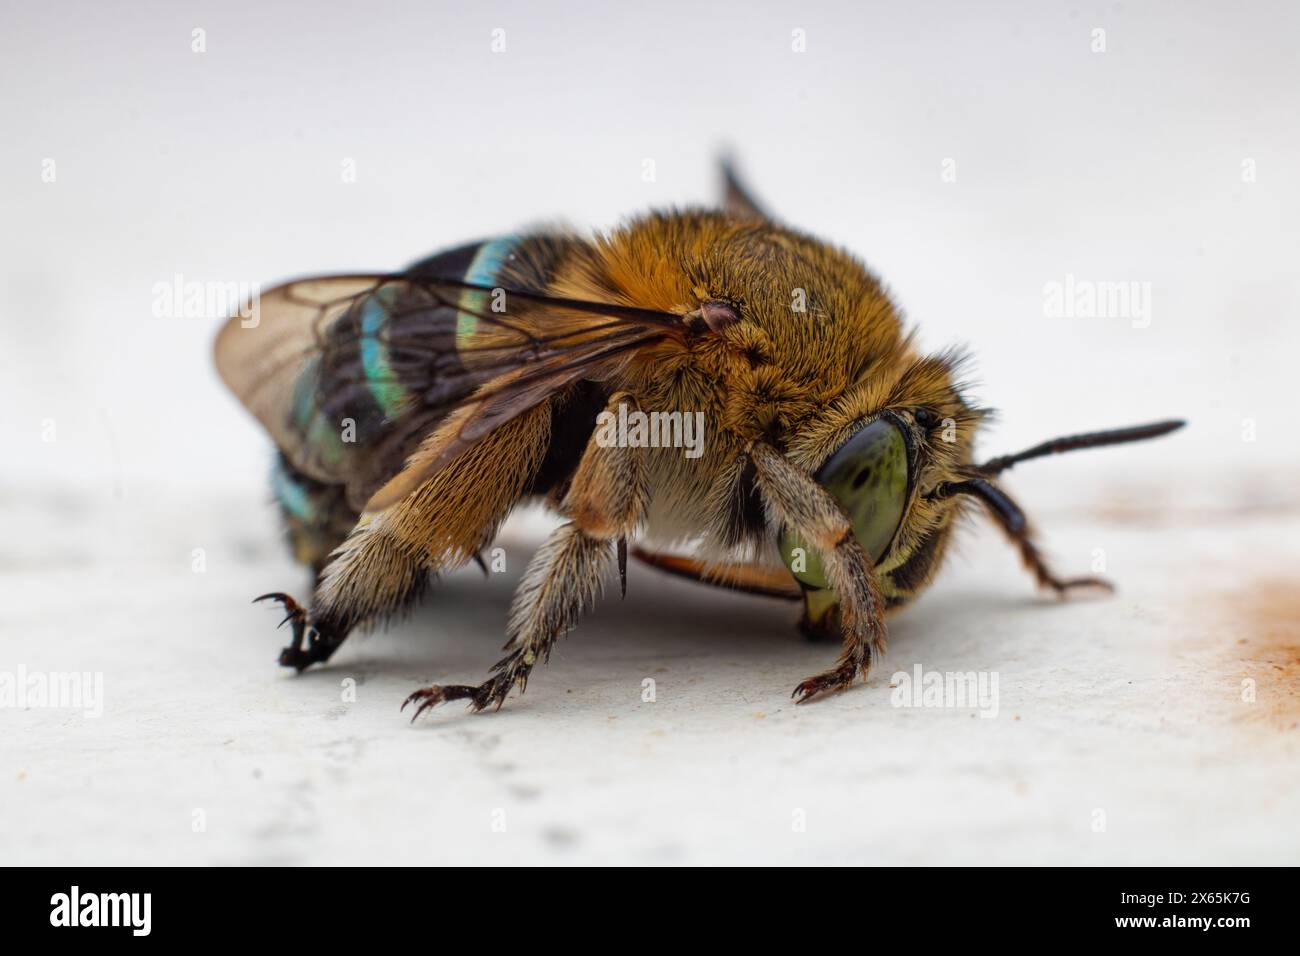 Blaubändige Bienen oder Baggerbienen, eine Art von im Allgemeinen mittelgroßen bis sehr großen Bienen, die zur Gattung Amegilla auf einer Marmorplatte gehören Stockfoto